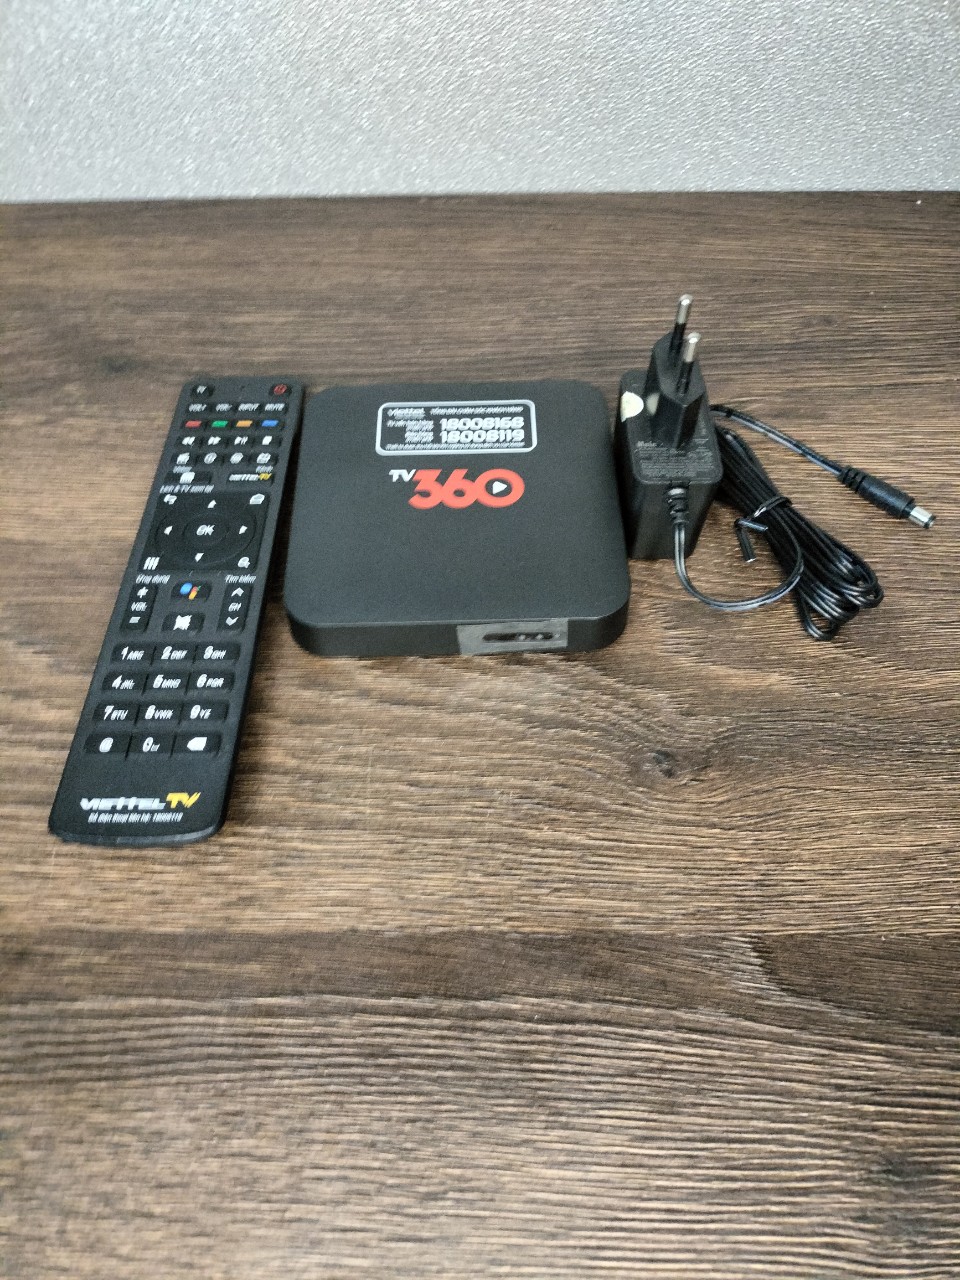 Box Viettel 360 lên mạng xem truyền hình biến tivi thương thành smart TV